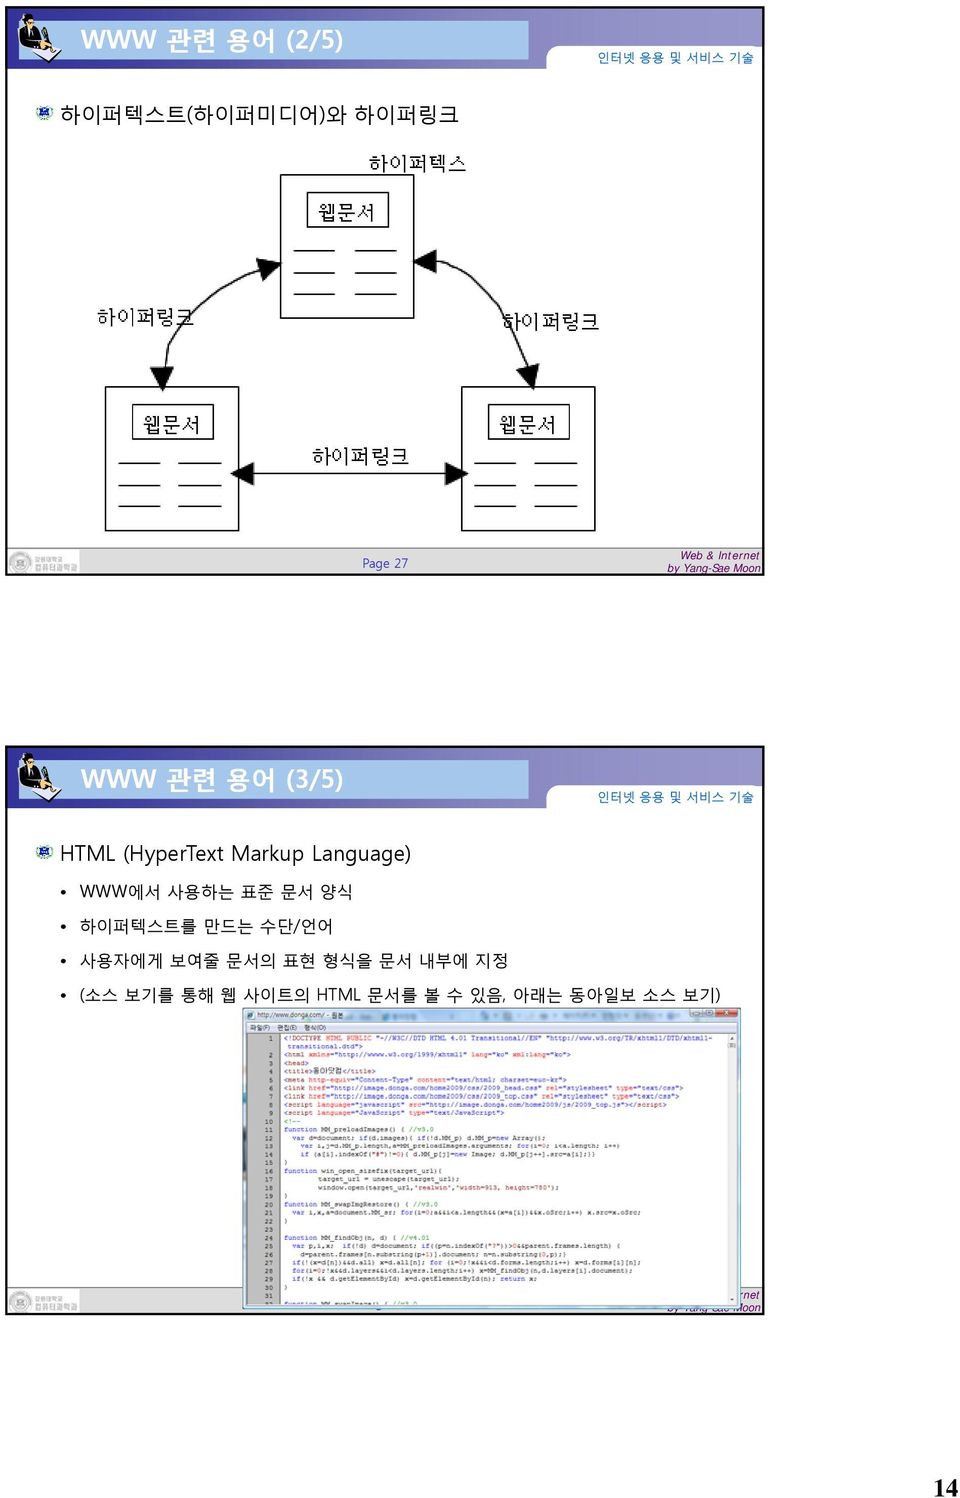 양식 하이퍼텍스트를 만드는 수단/언어 사용자에게 보여줄 문서의 표현 형식을 문서 내부에 지정 (소스